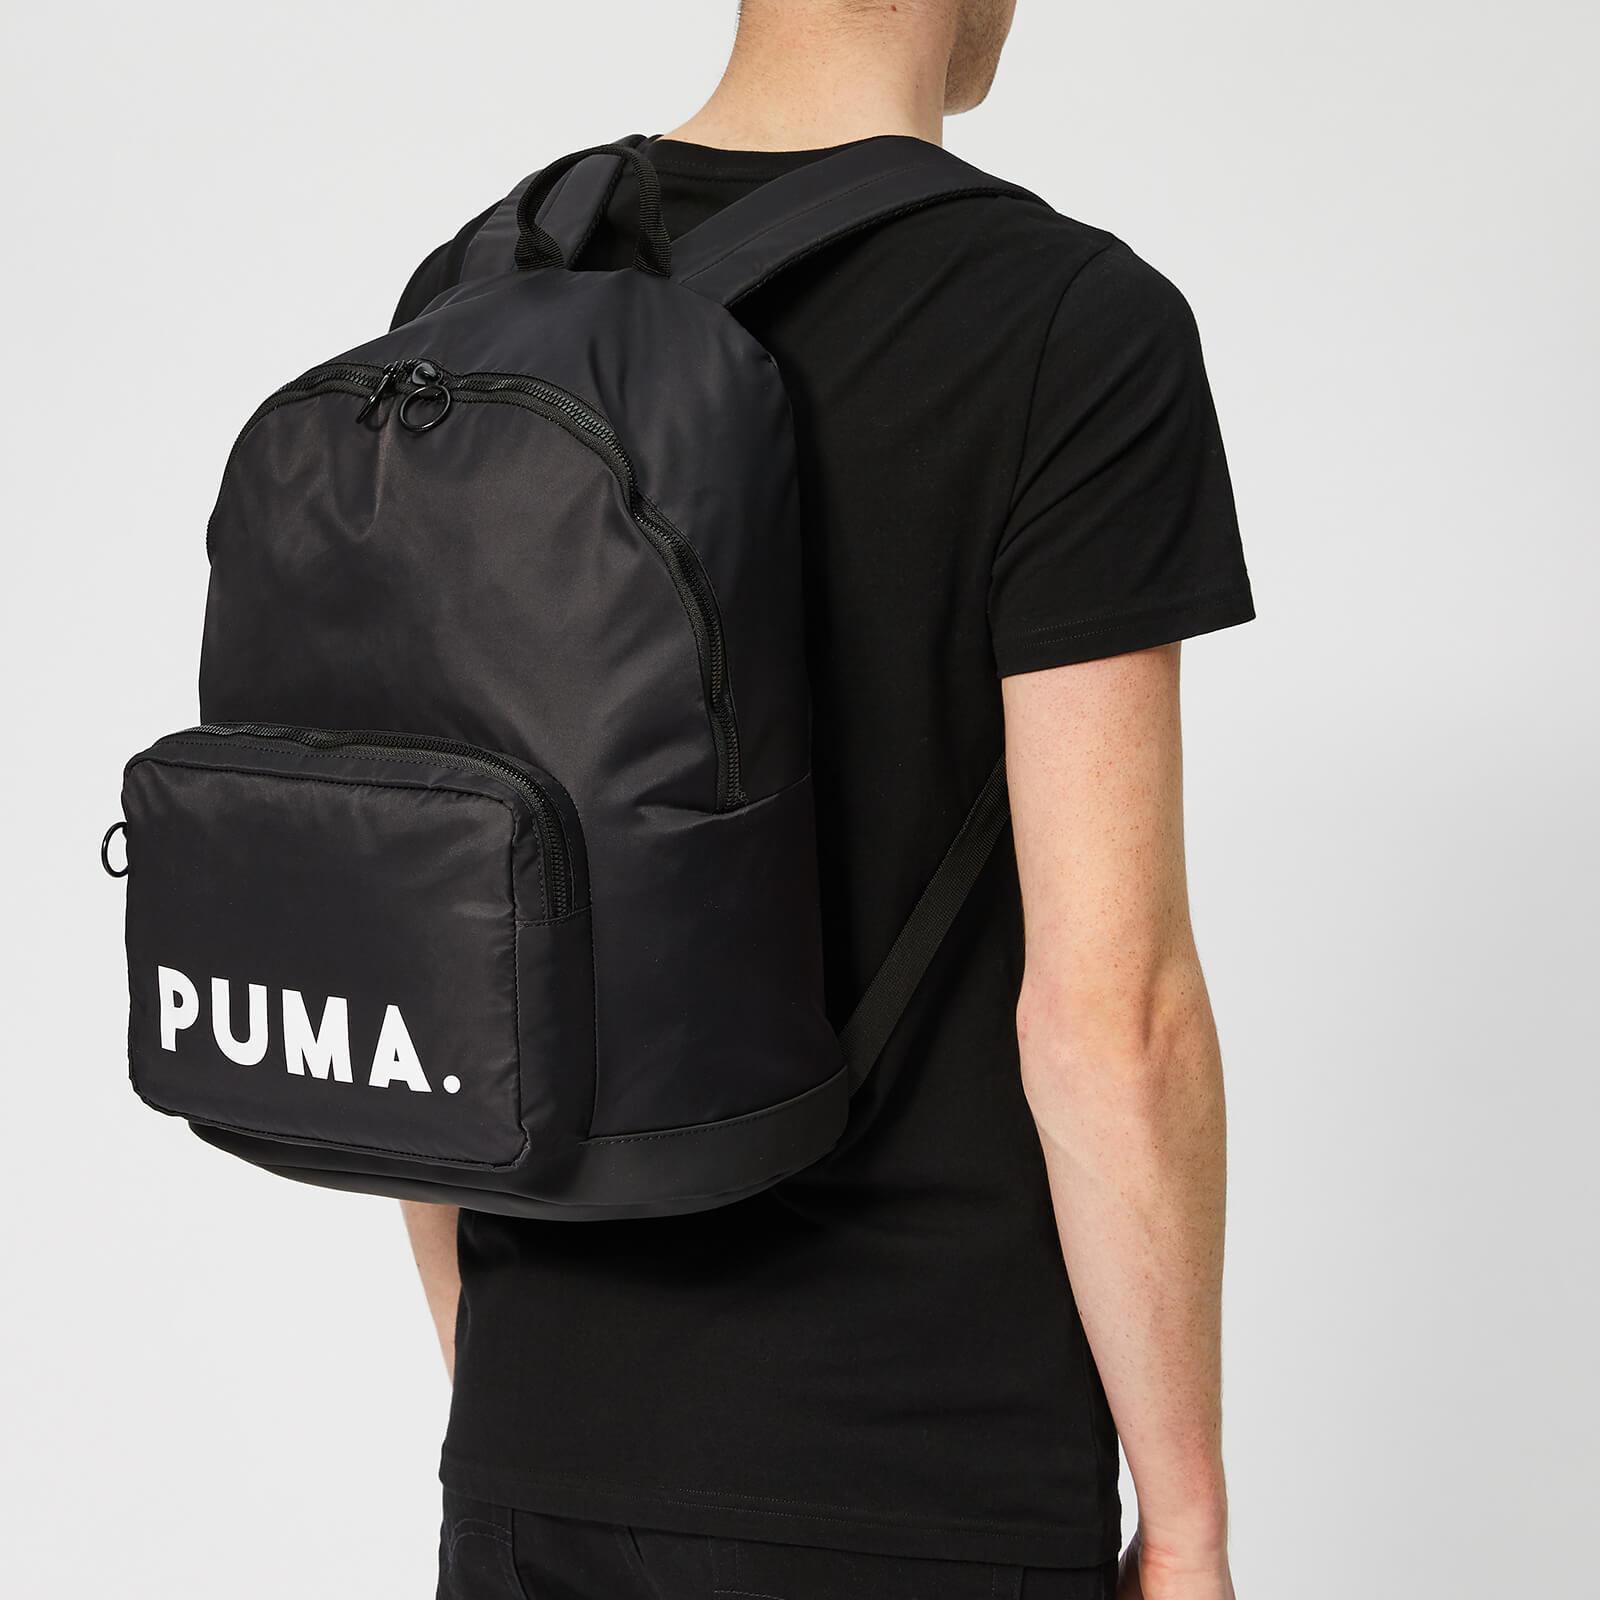 puma originals backpack trend